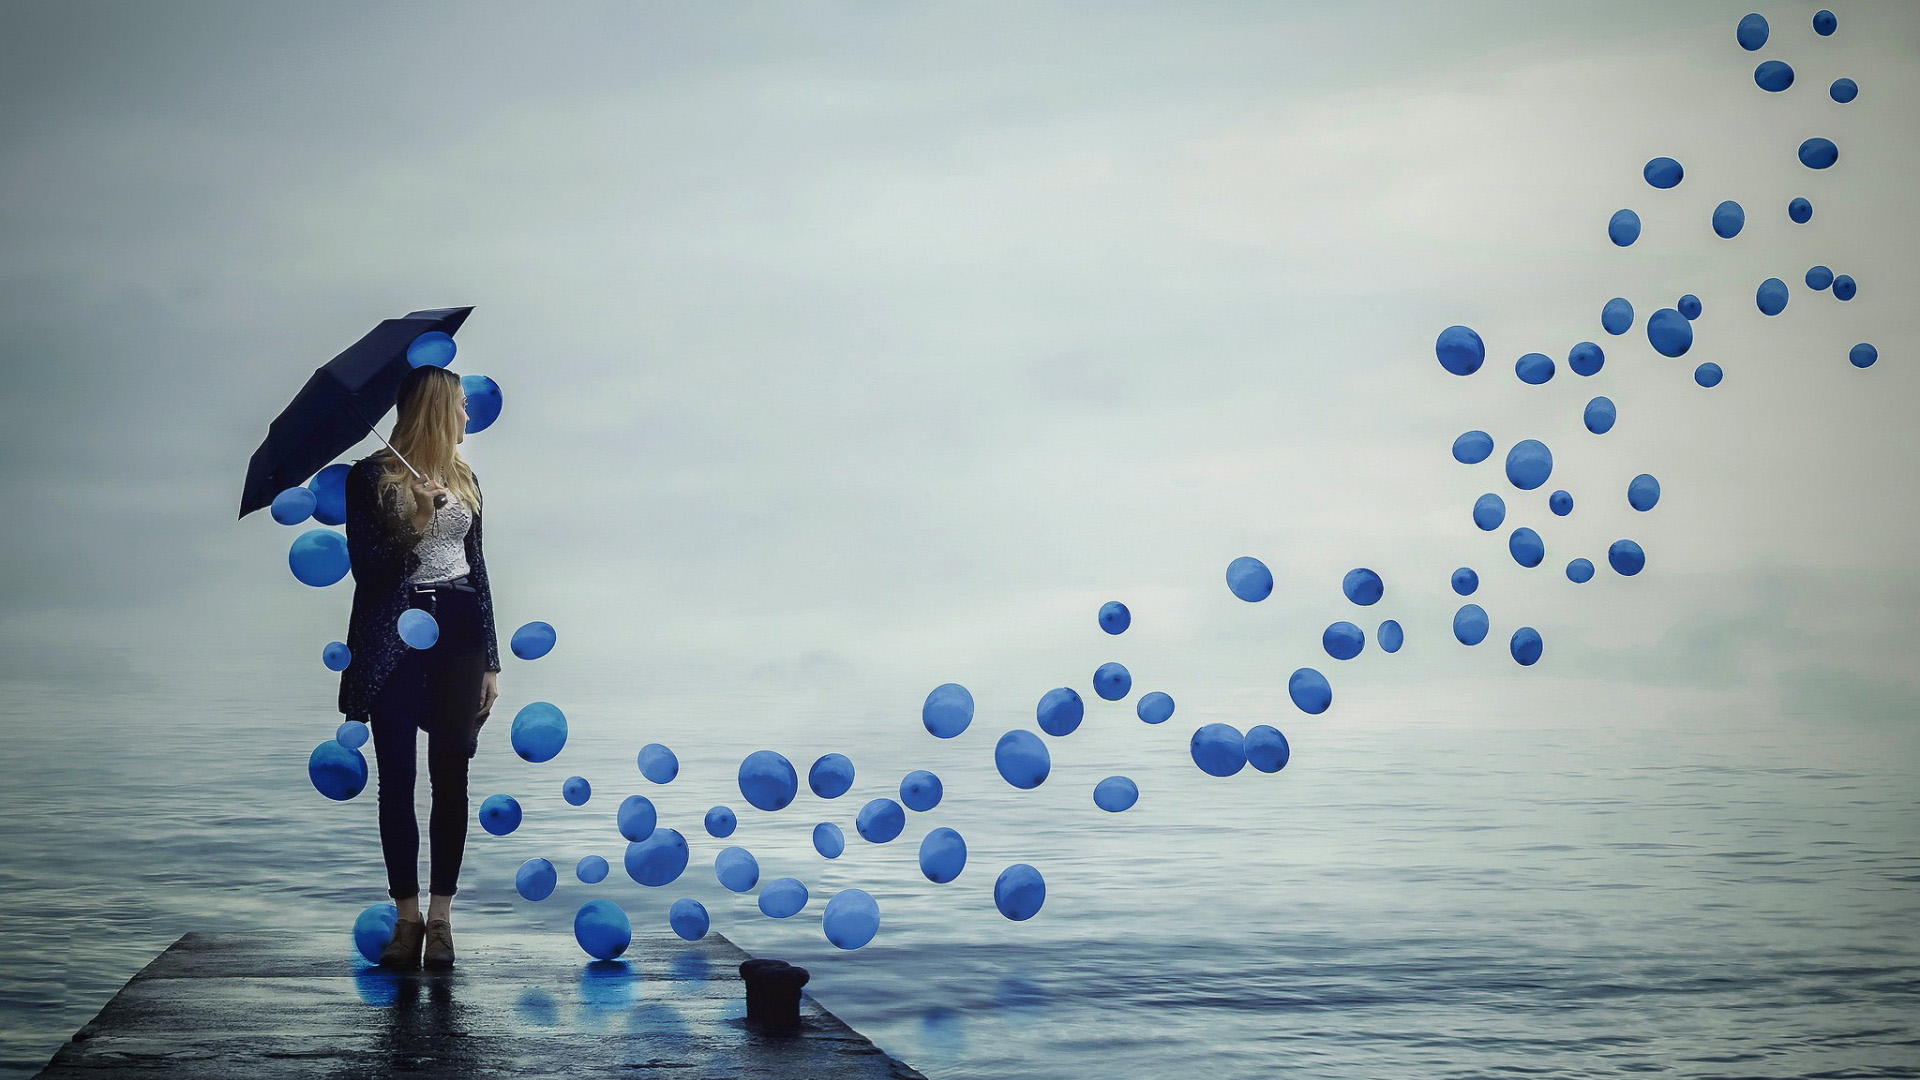 女孩,蓝色气球,雨伞,海边,码头,等待,唯美意境壁纸